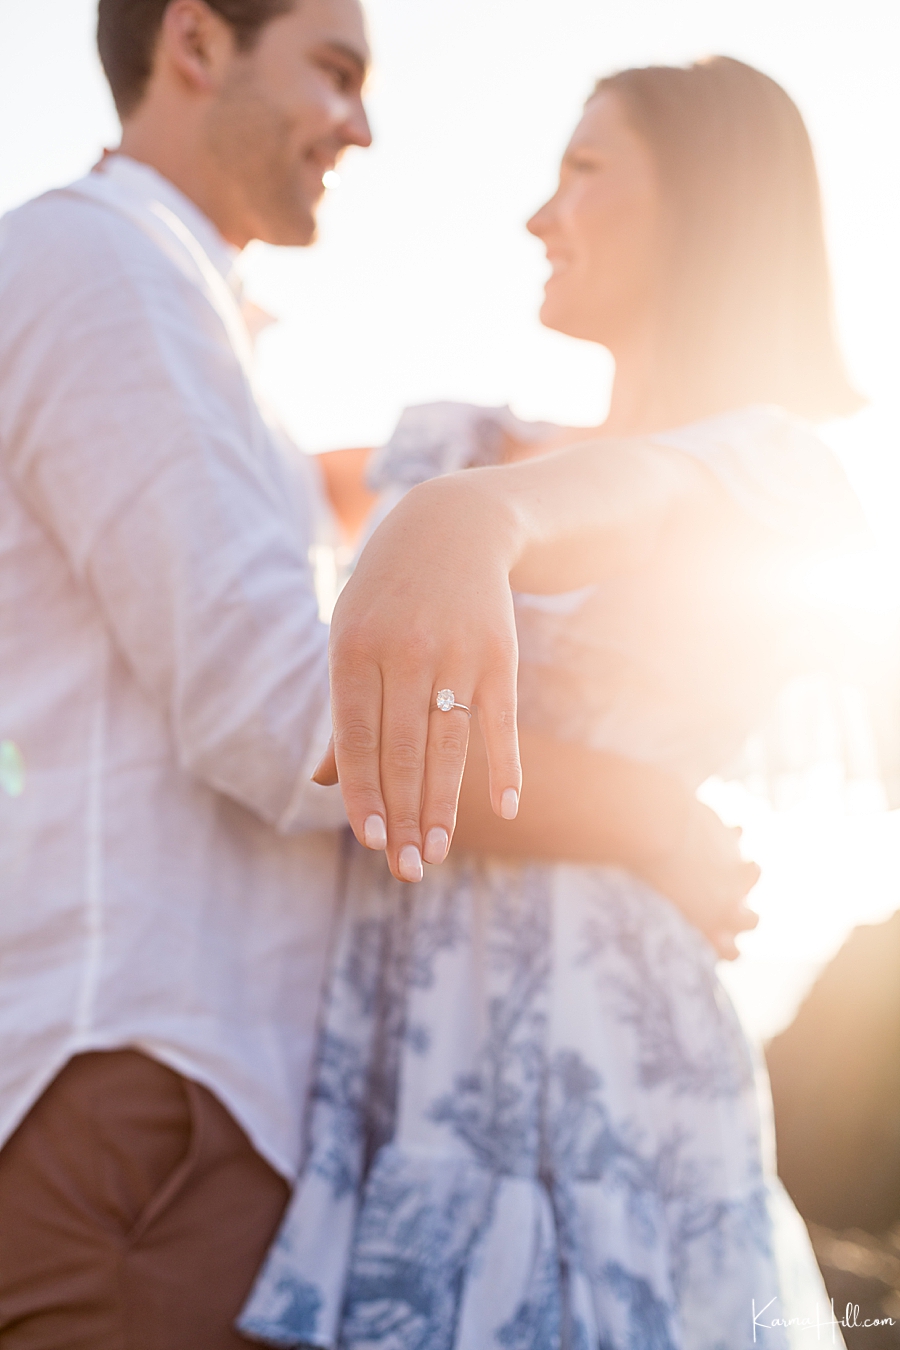 newly engaged couple show diamond engagement ring 